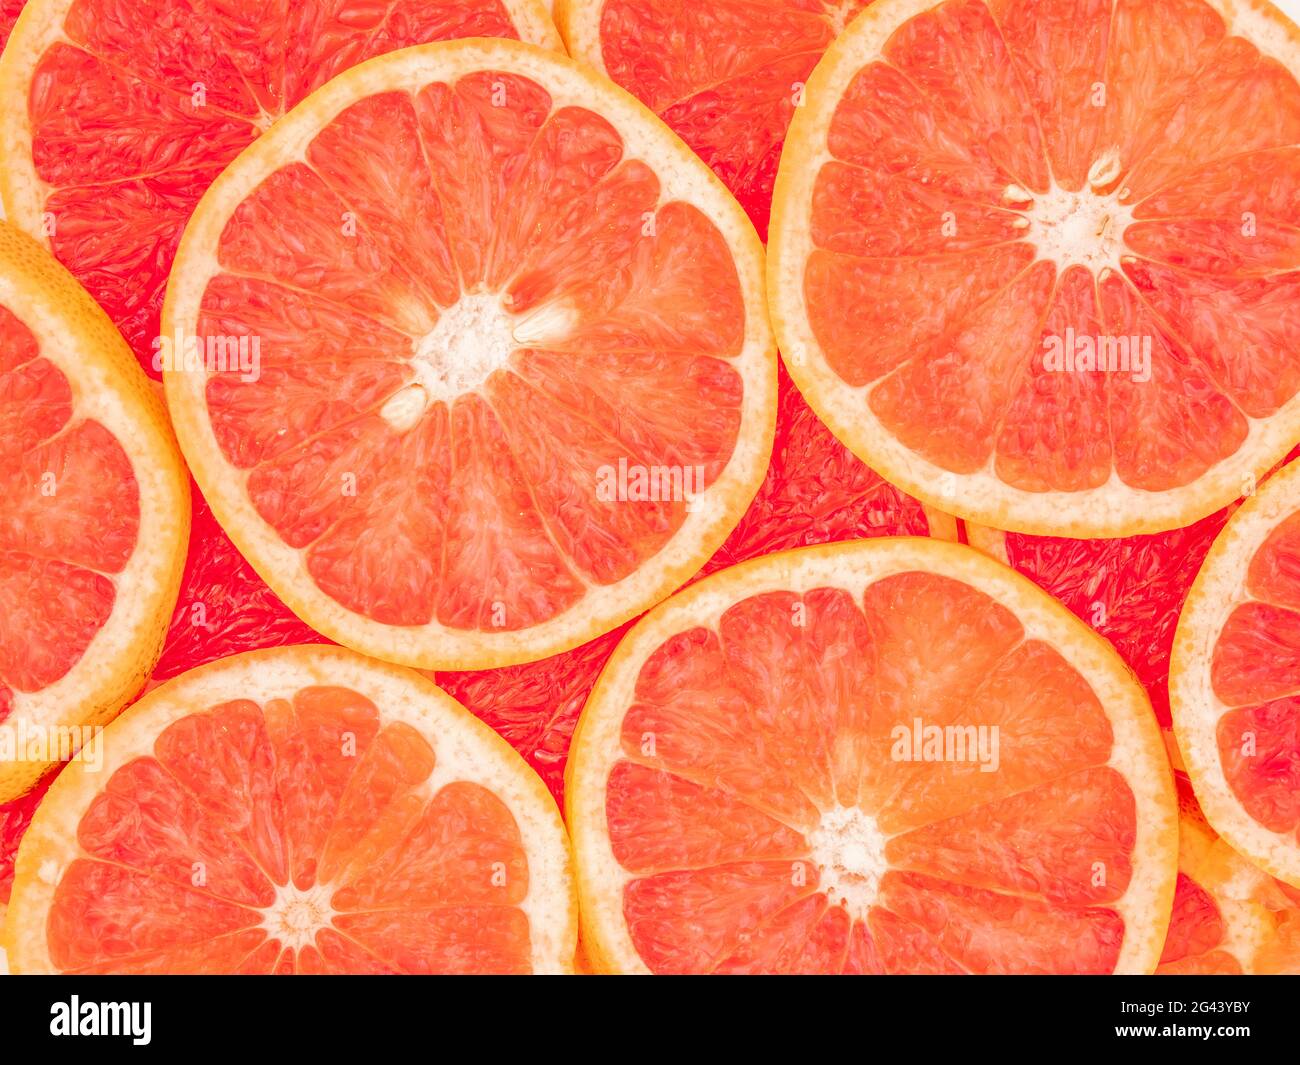 Full frame of sliced grapefruit Stock Photo